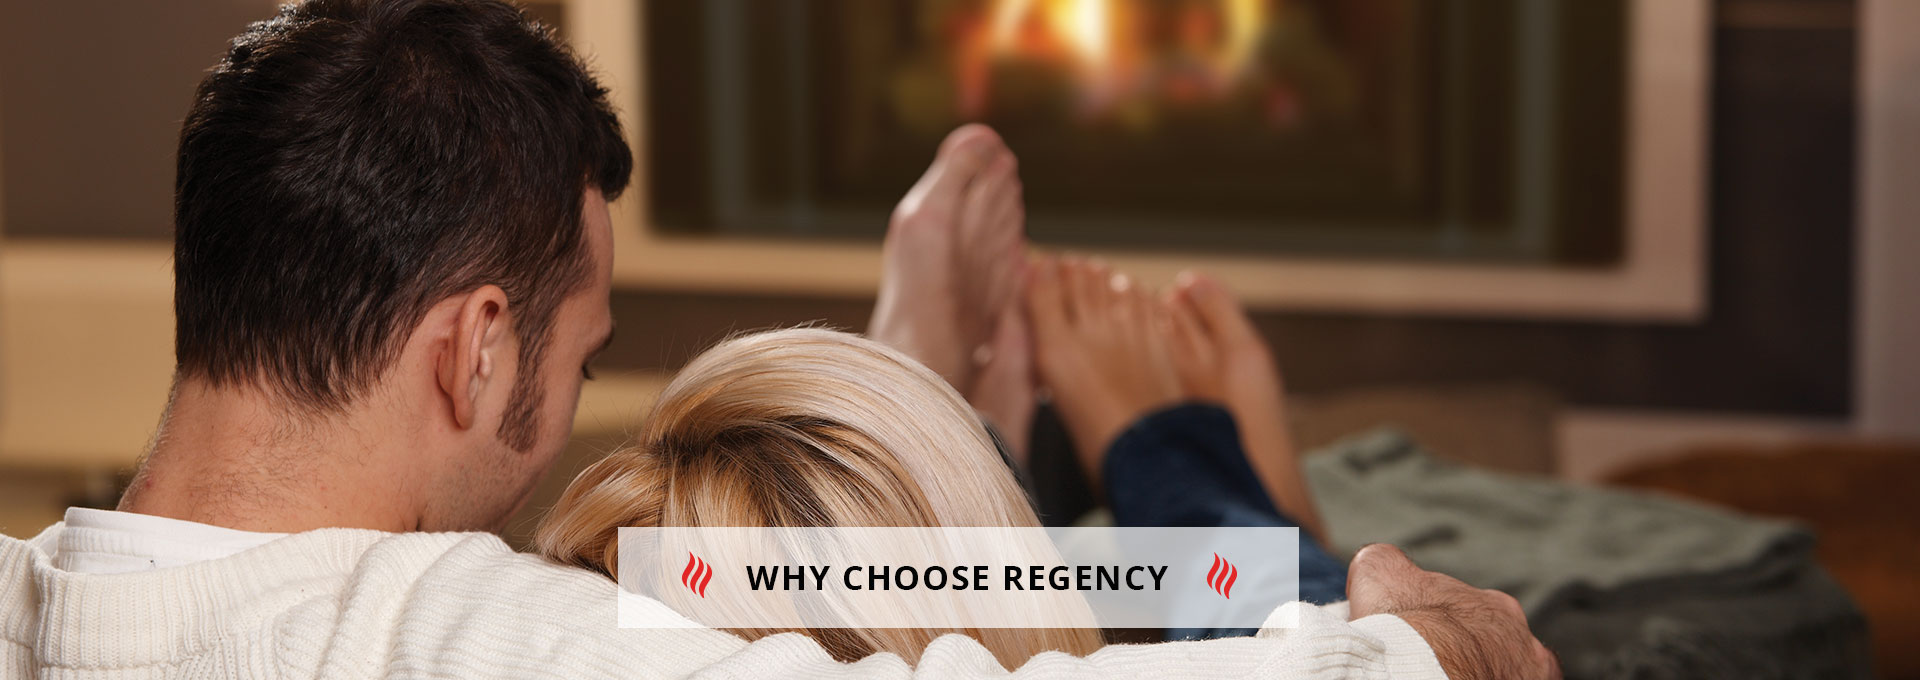 Why Choose Regency? 